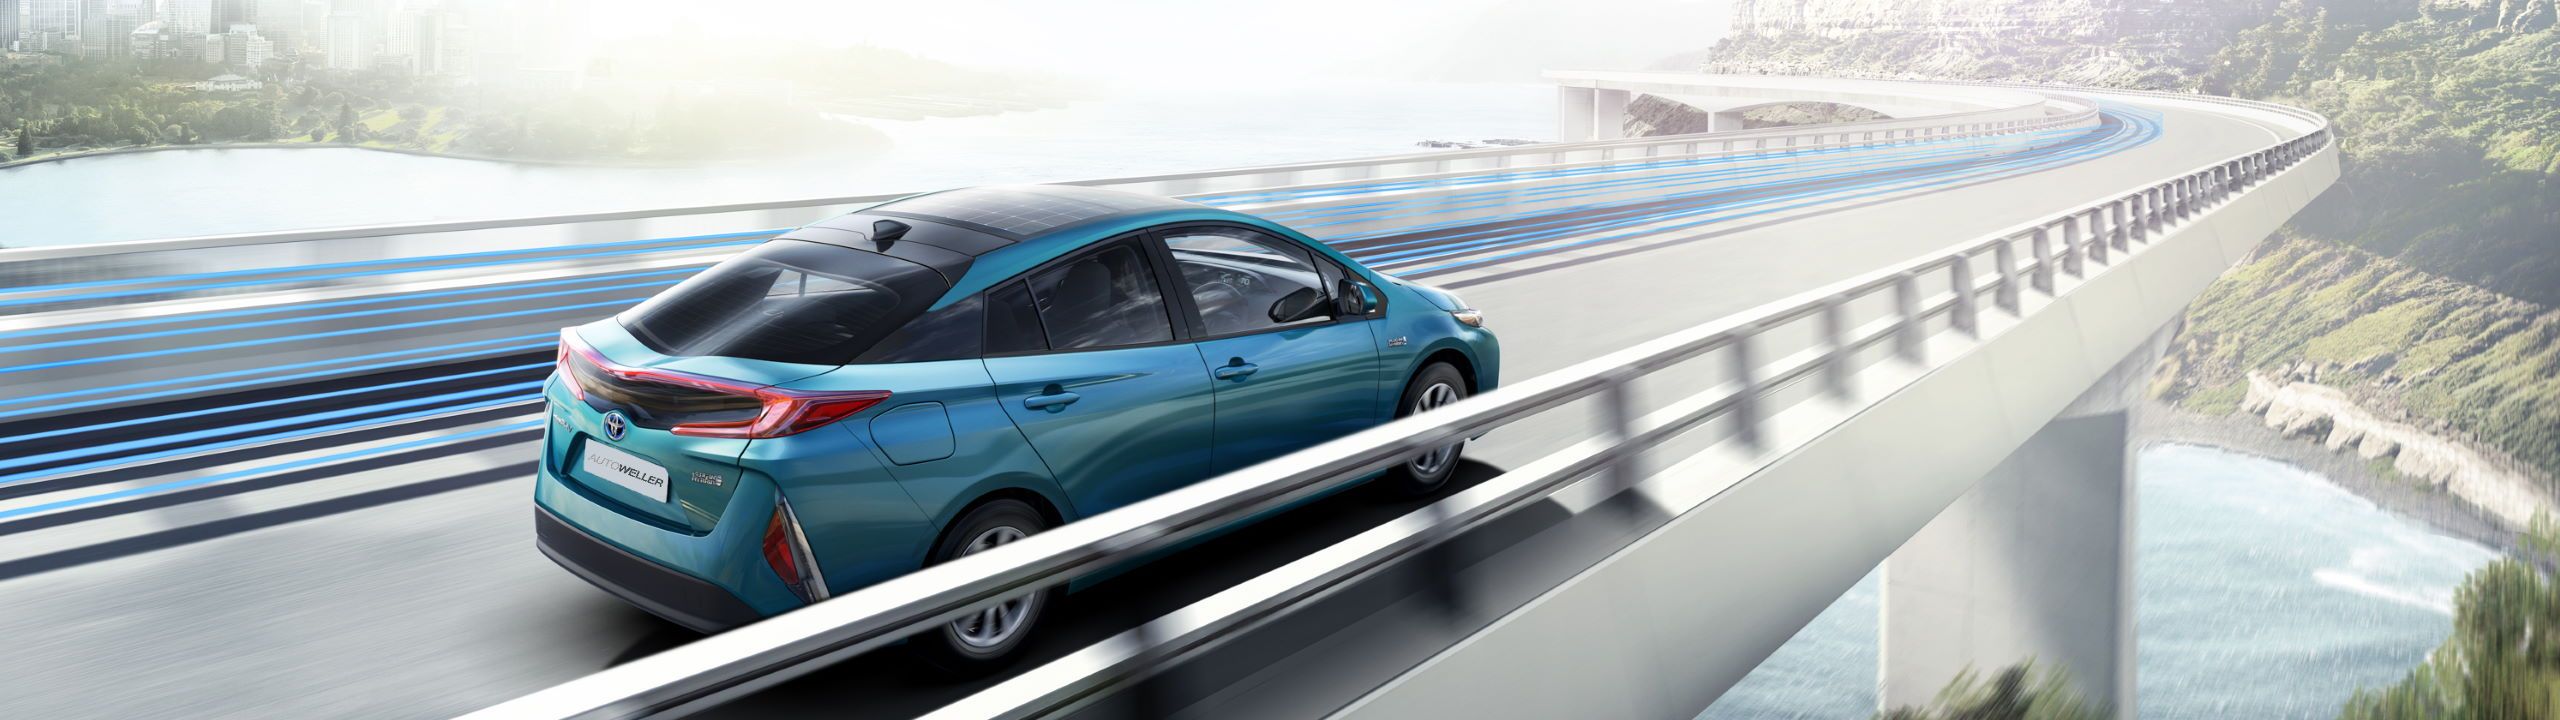 Toyota Prius fährt über futuristisch anmutende Brücke